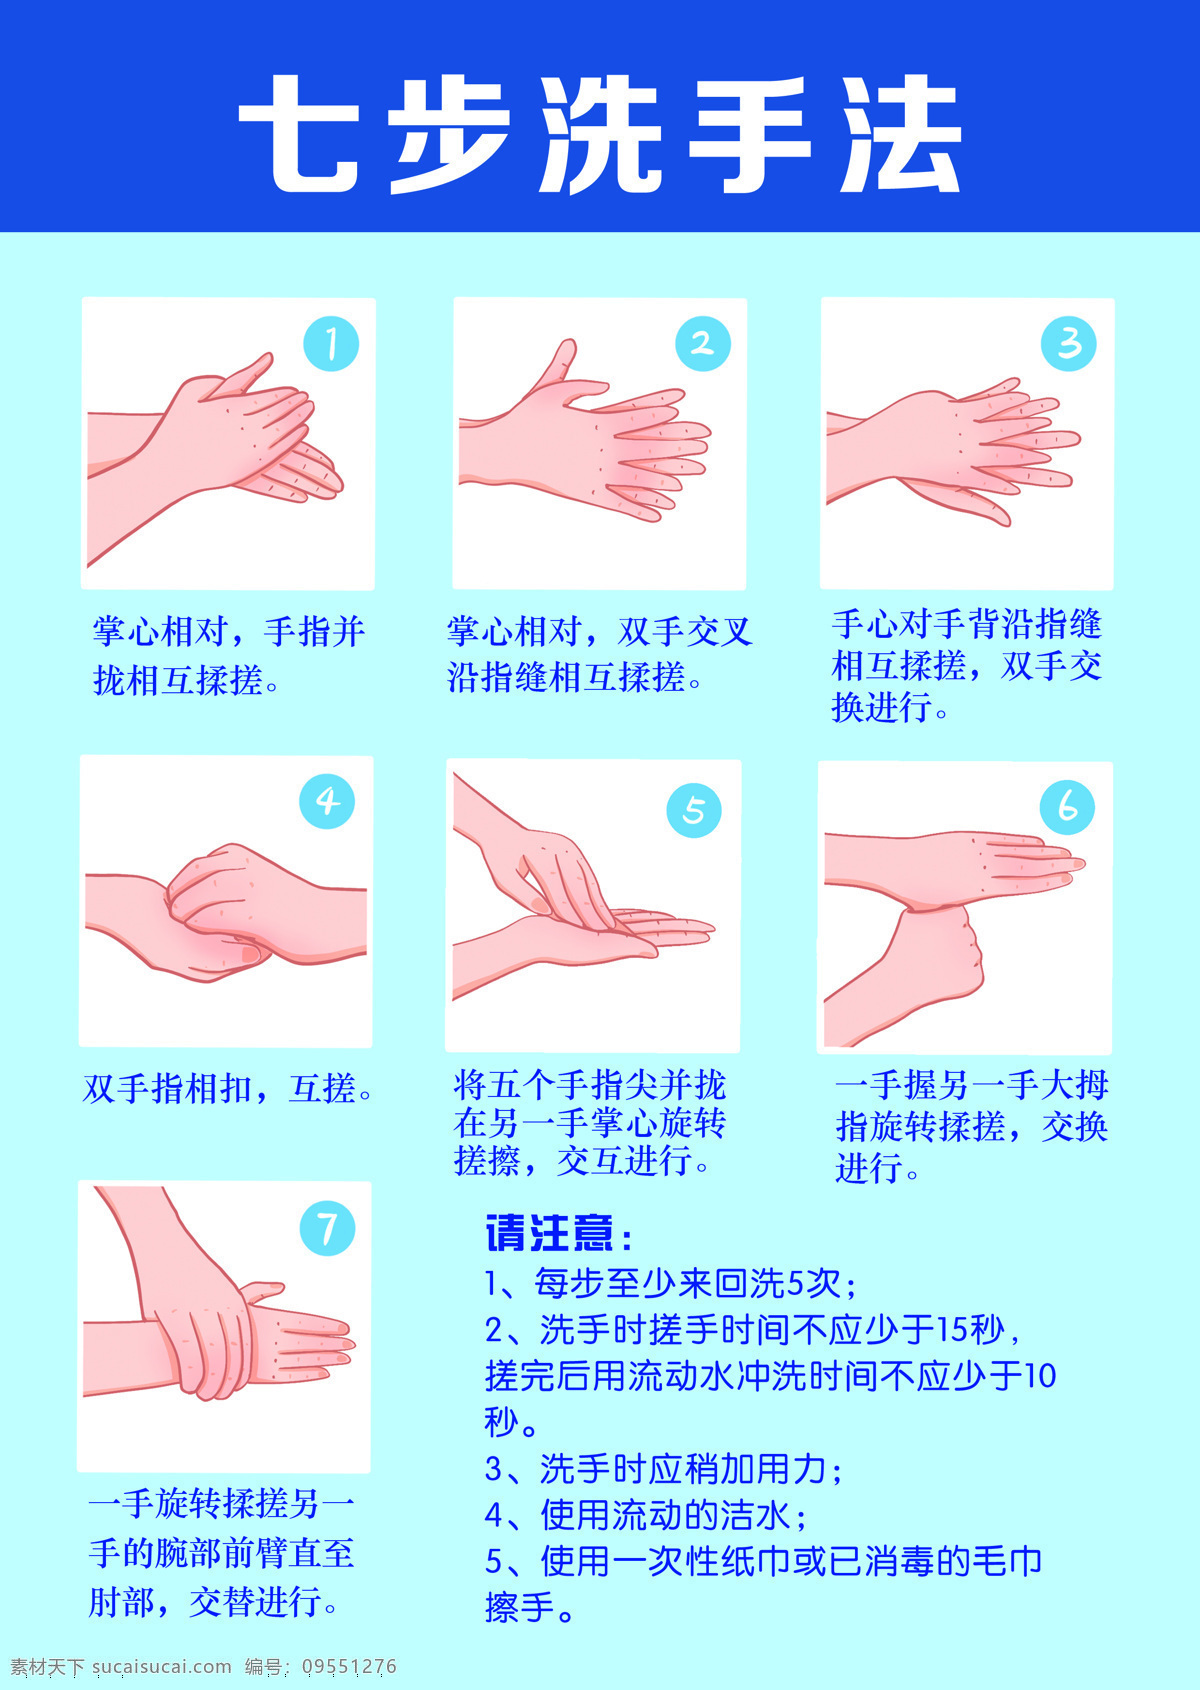 7步洗手法 疫情 期间 勤洗手 7步 洗手 方法